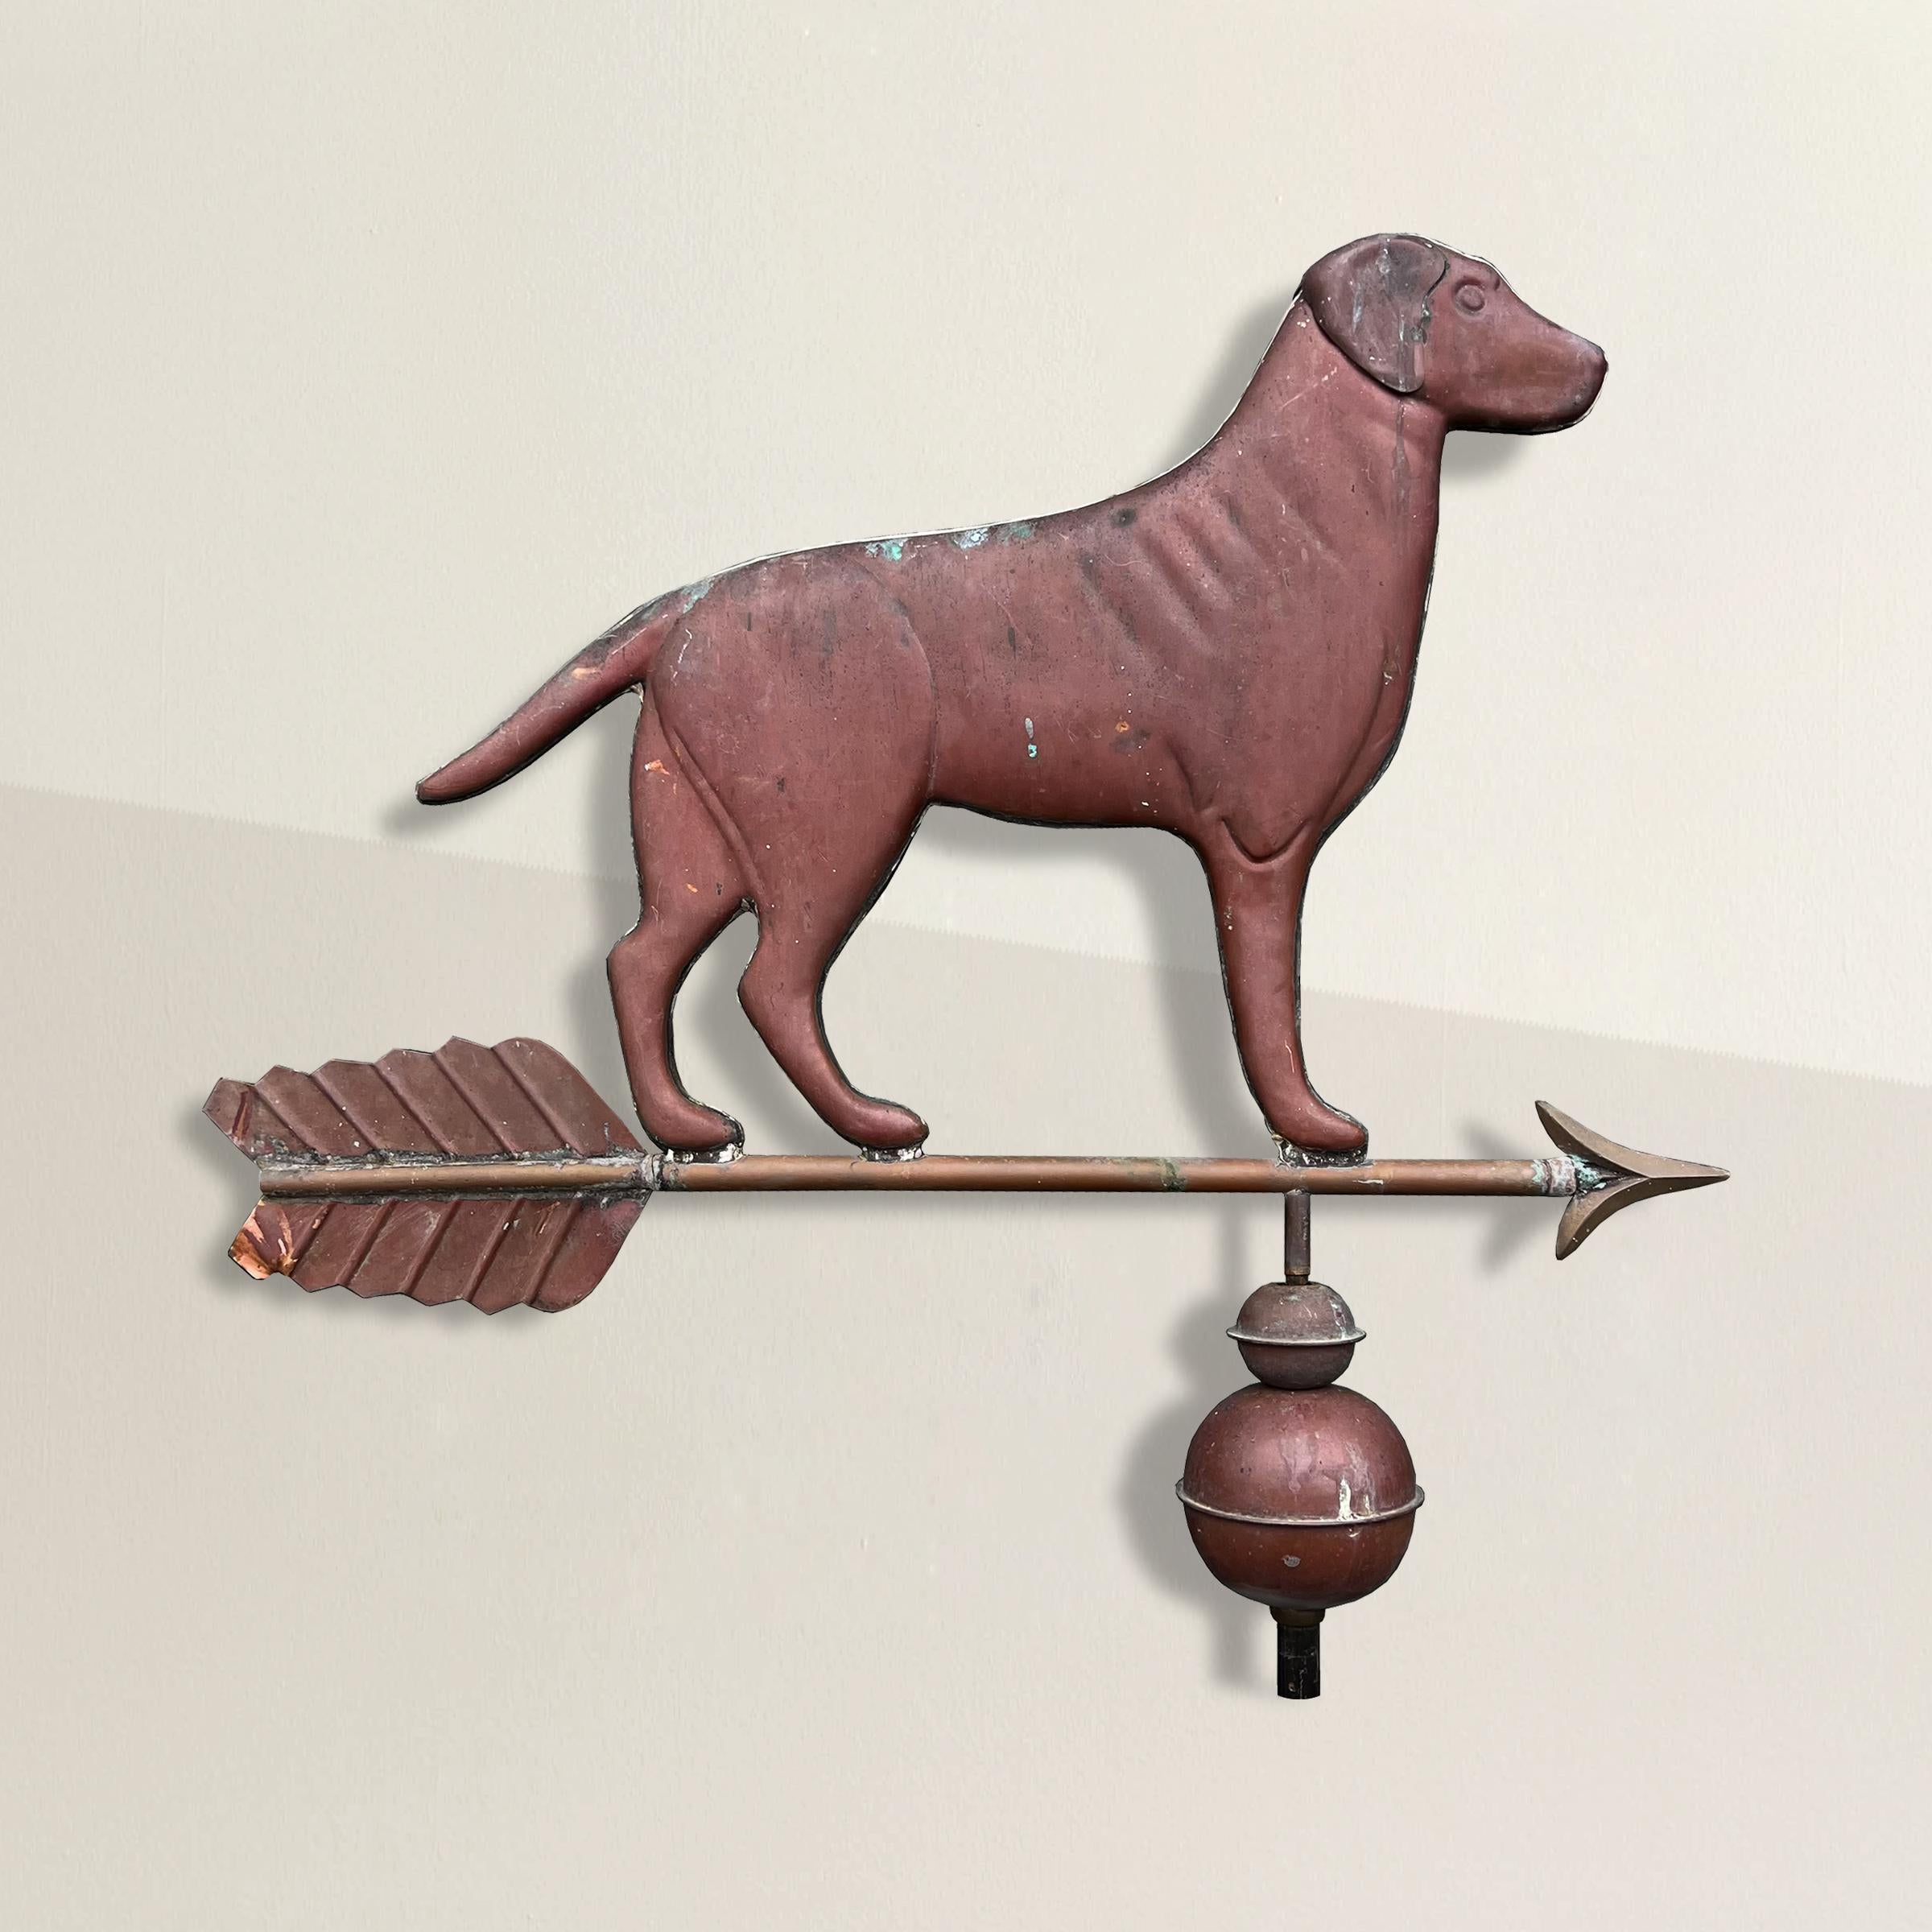 Cette girouette Labrador en cuivre américain du XXe siècle est un mélange captivant d'art et de fonctionnalité. Réalisée avec minutie, elle représente un Labrador majestueux se tenant fièrement au sommet d'une flèche et de deux sphères creuses. La